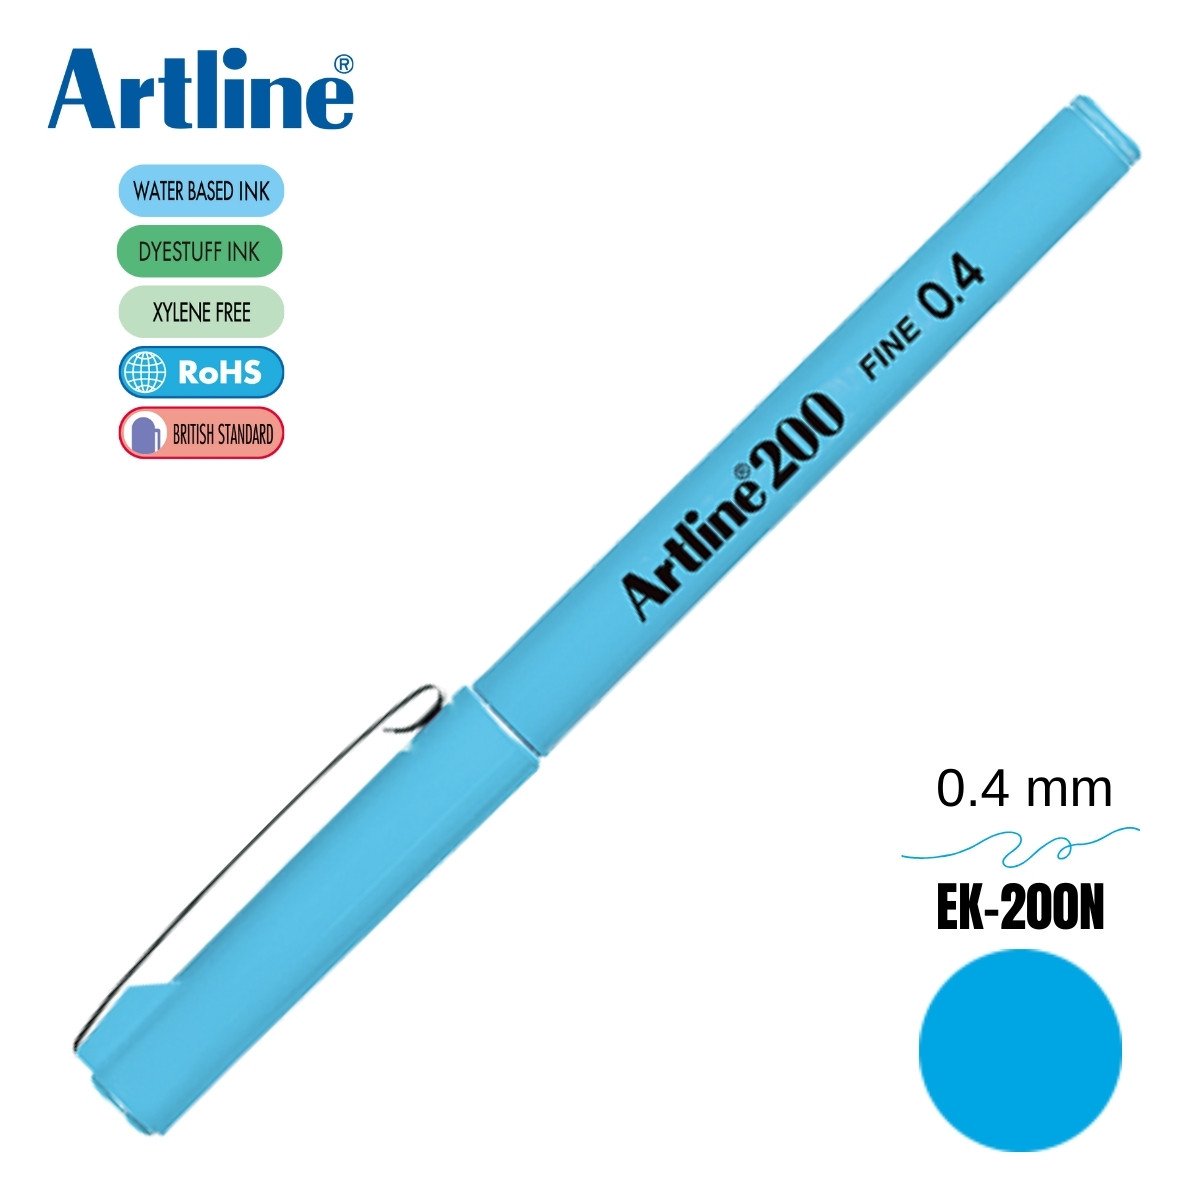 Artline 200 Fine Keçe Uçlu Yazı Kalemi 0.4mm Açık Mavi